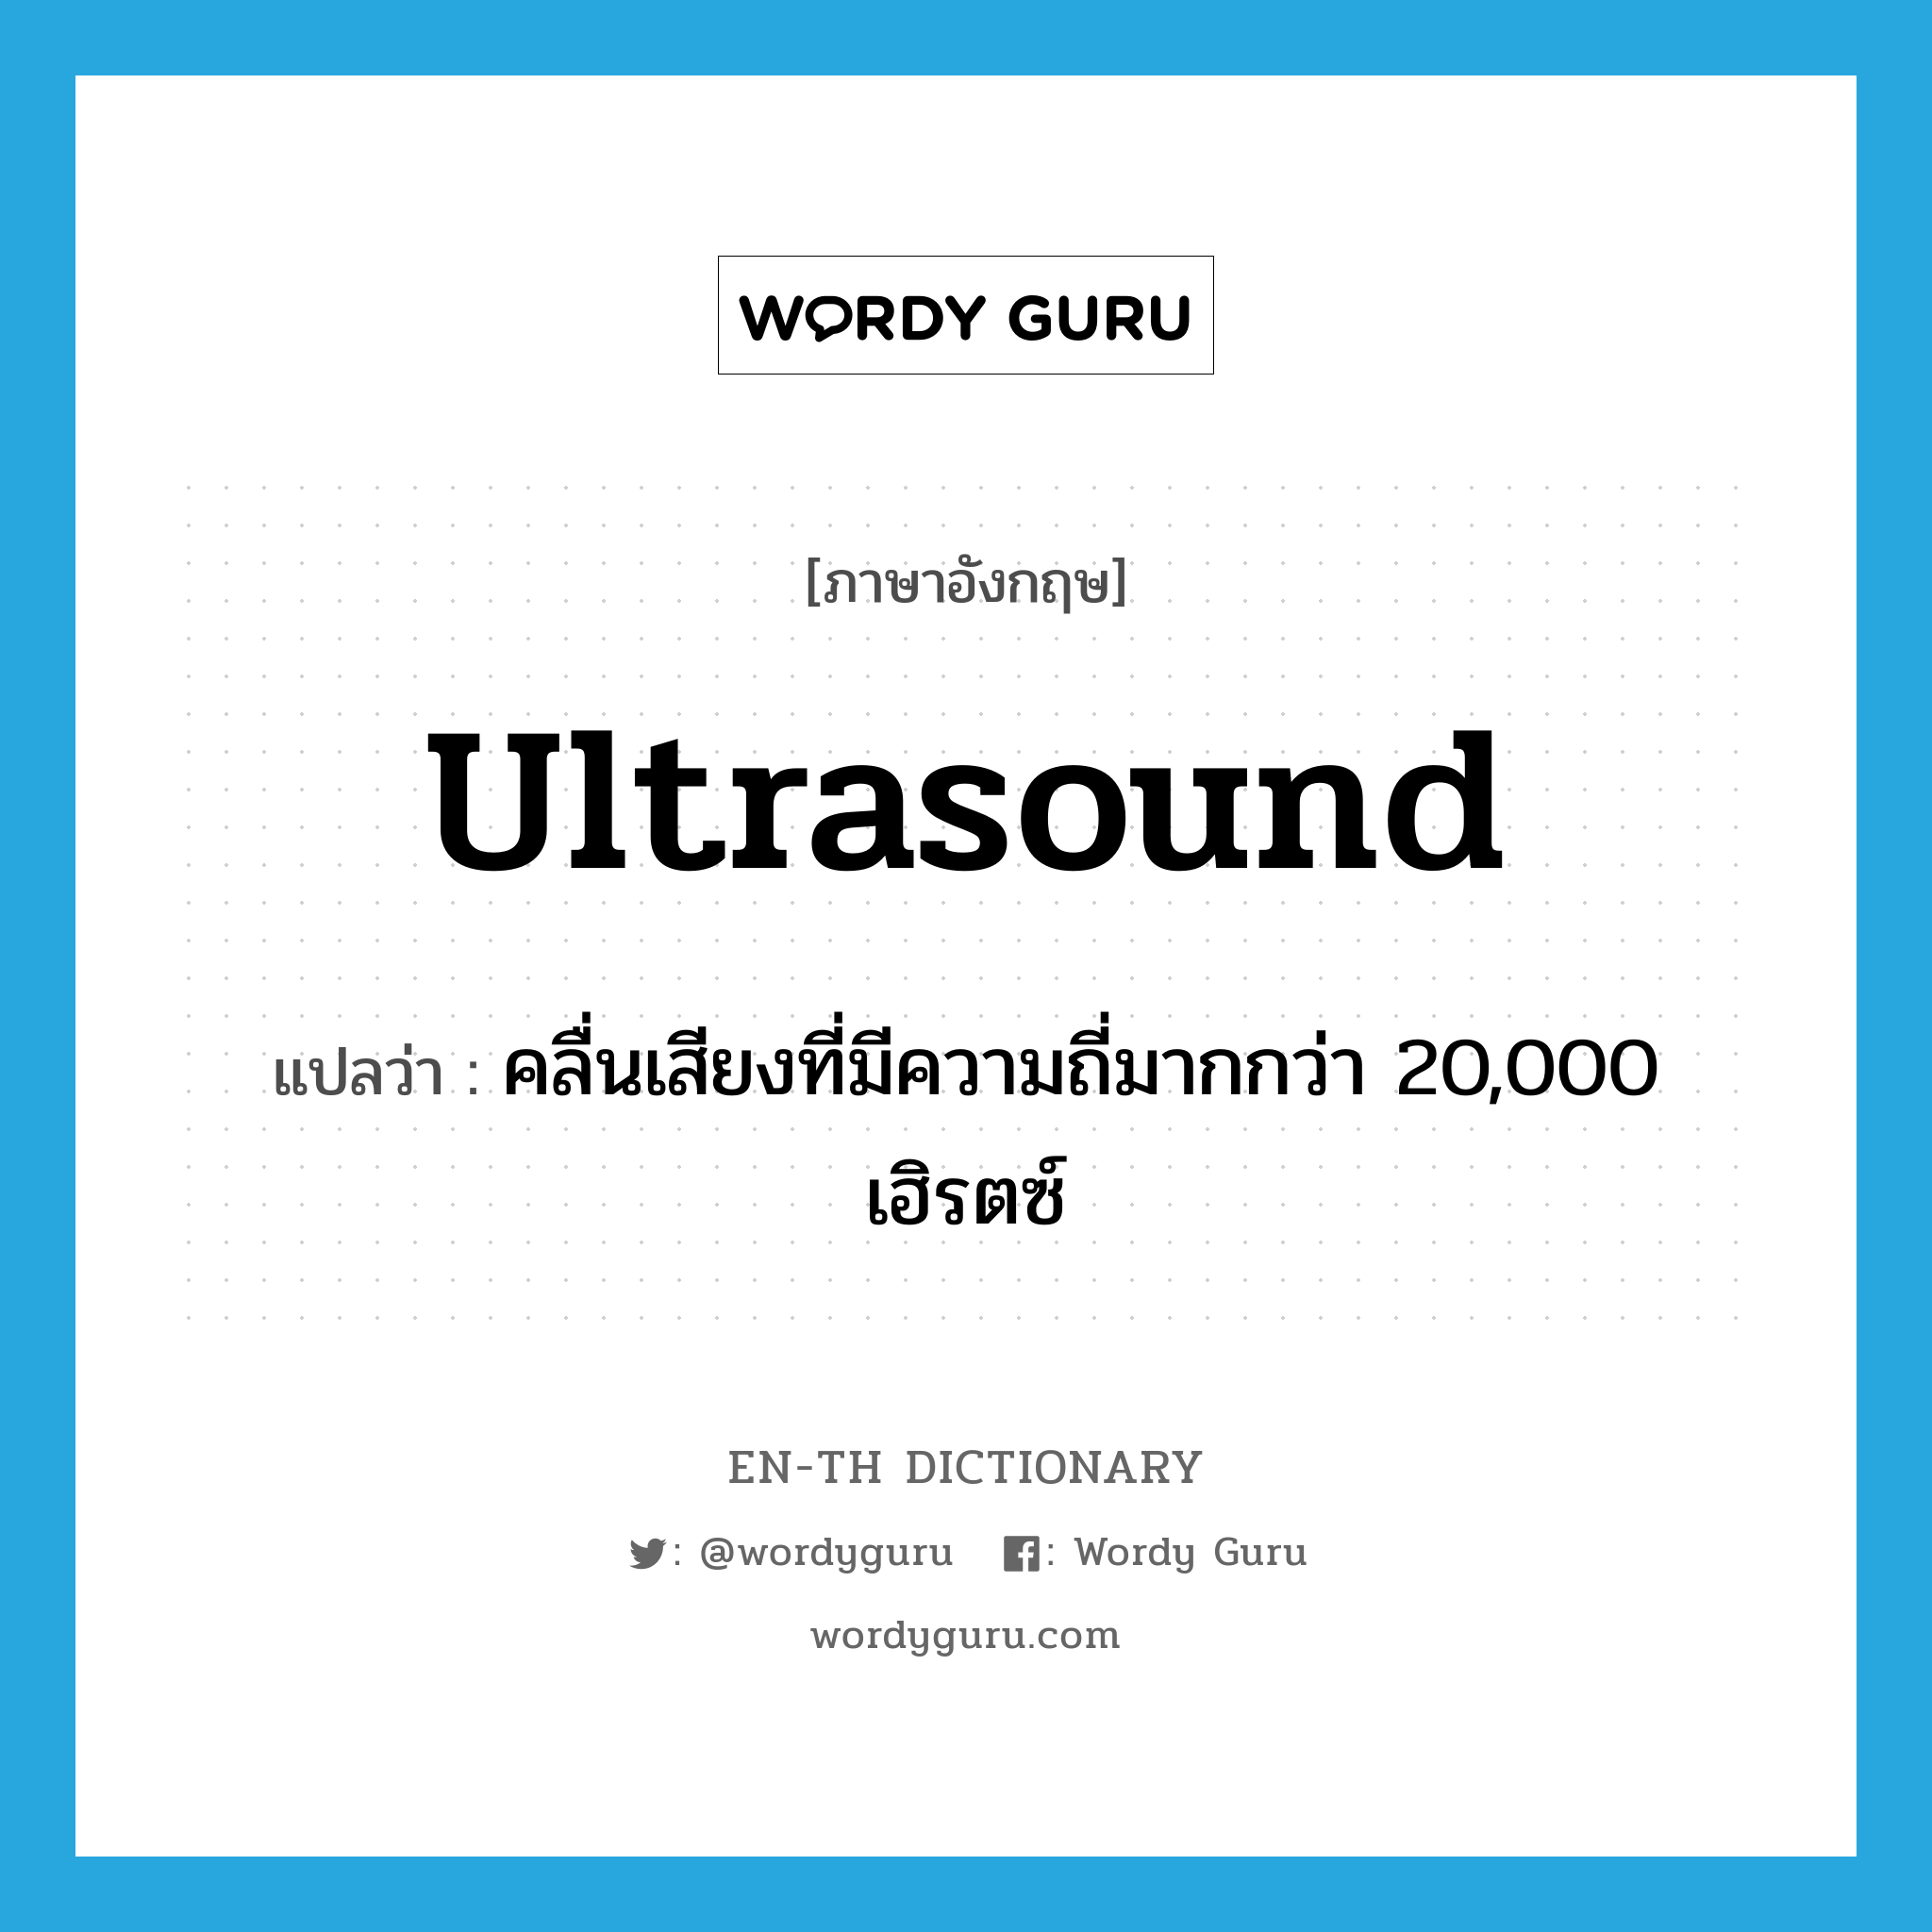 คลื่นเสียงที่มีความถี่มากกว่า 20,000 เฮิรตซ์ ภาษาอังกฤษ?, คำศัพท์ภาษาอังกฤษ คลื่นเสียงที่มีความถี่มากกว่า 20,000 เฮิรตซ์ แปลว่า ultrasound ประเภท N หมวด N